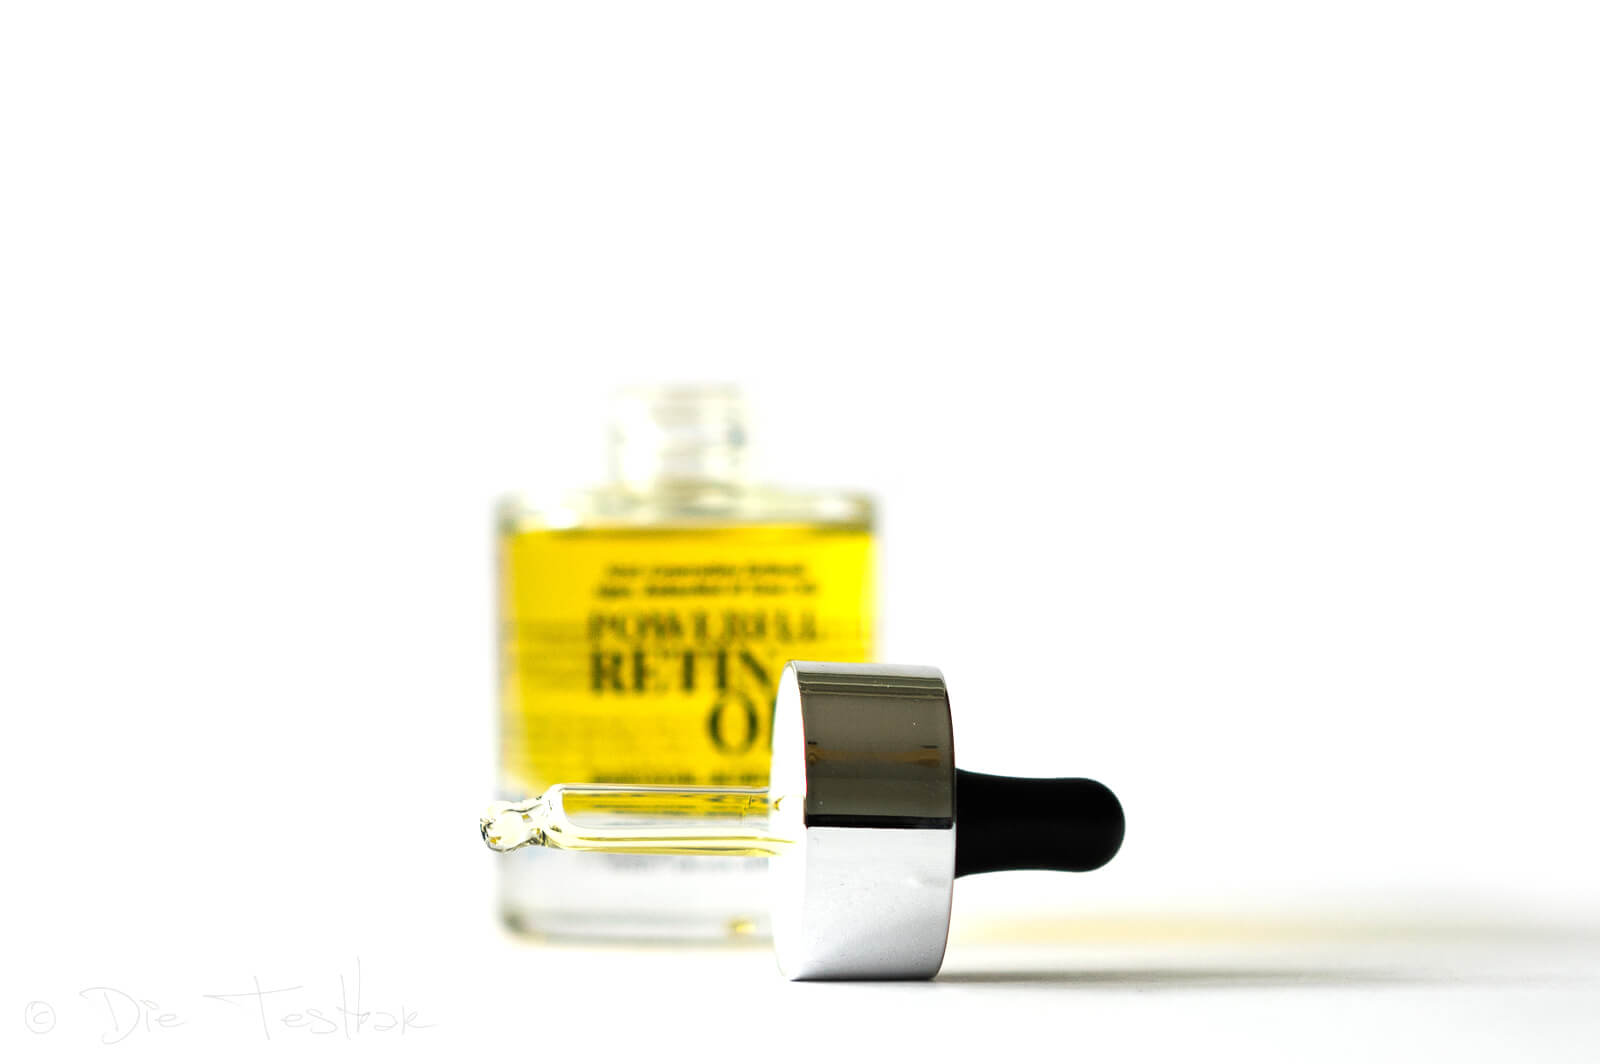 Powerful Retin Oil von Instytutum - Das reichhaltige goldene Öl mit Retinol